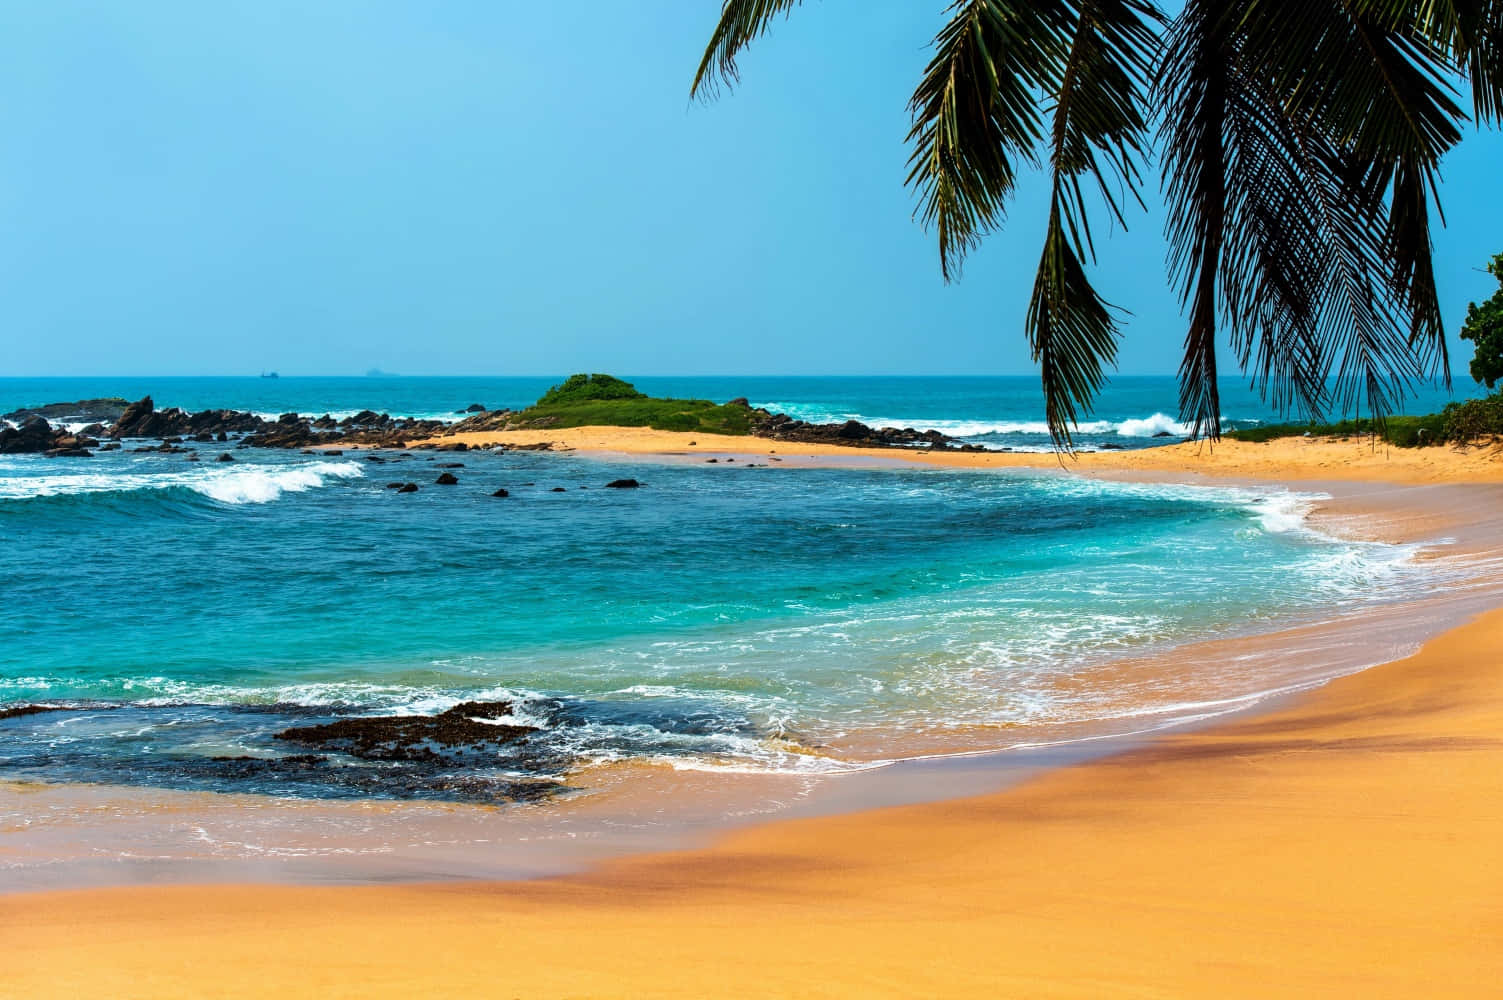 "A paradise tropical beach under blue skies"